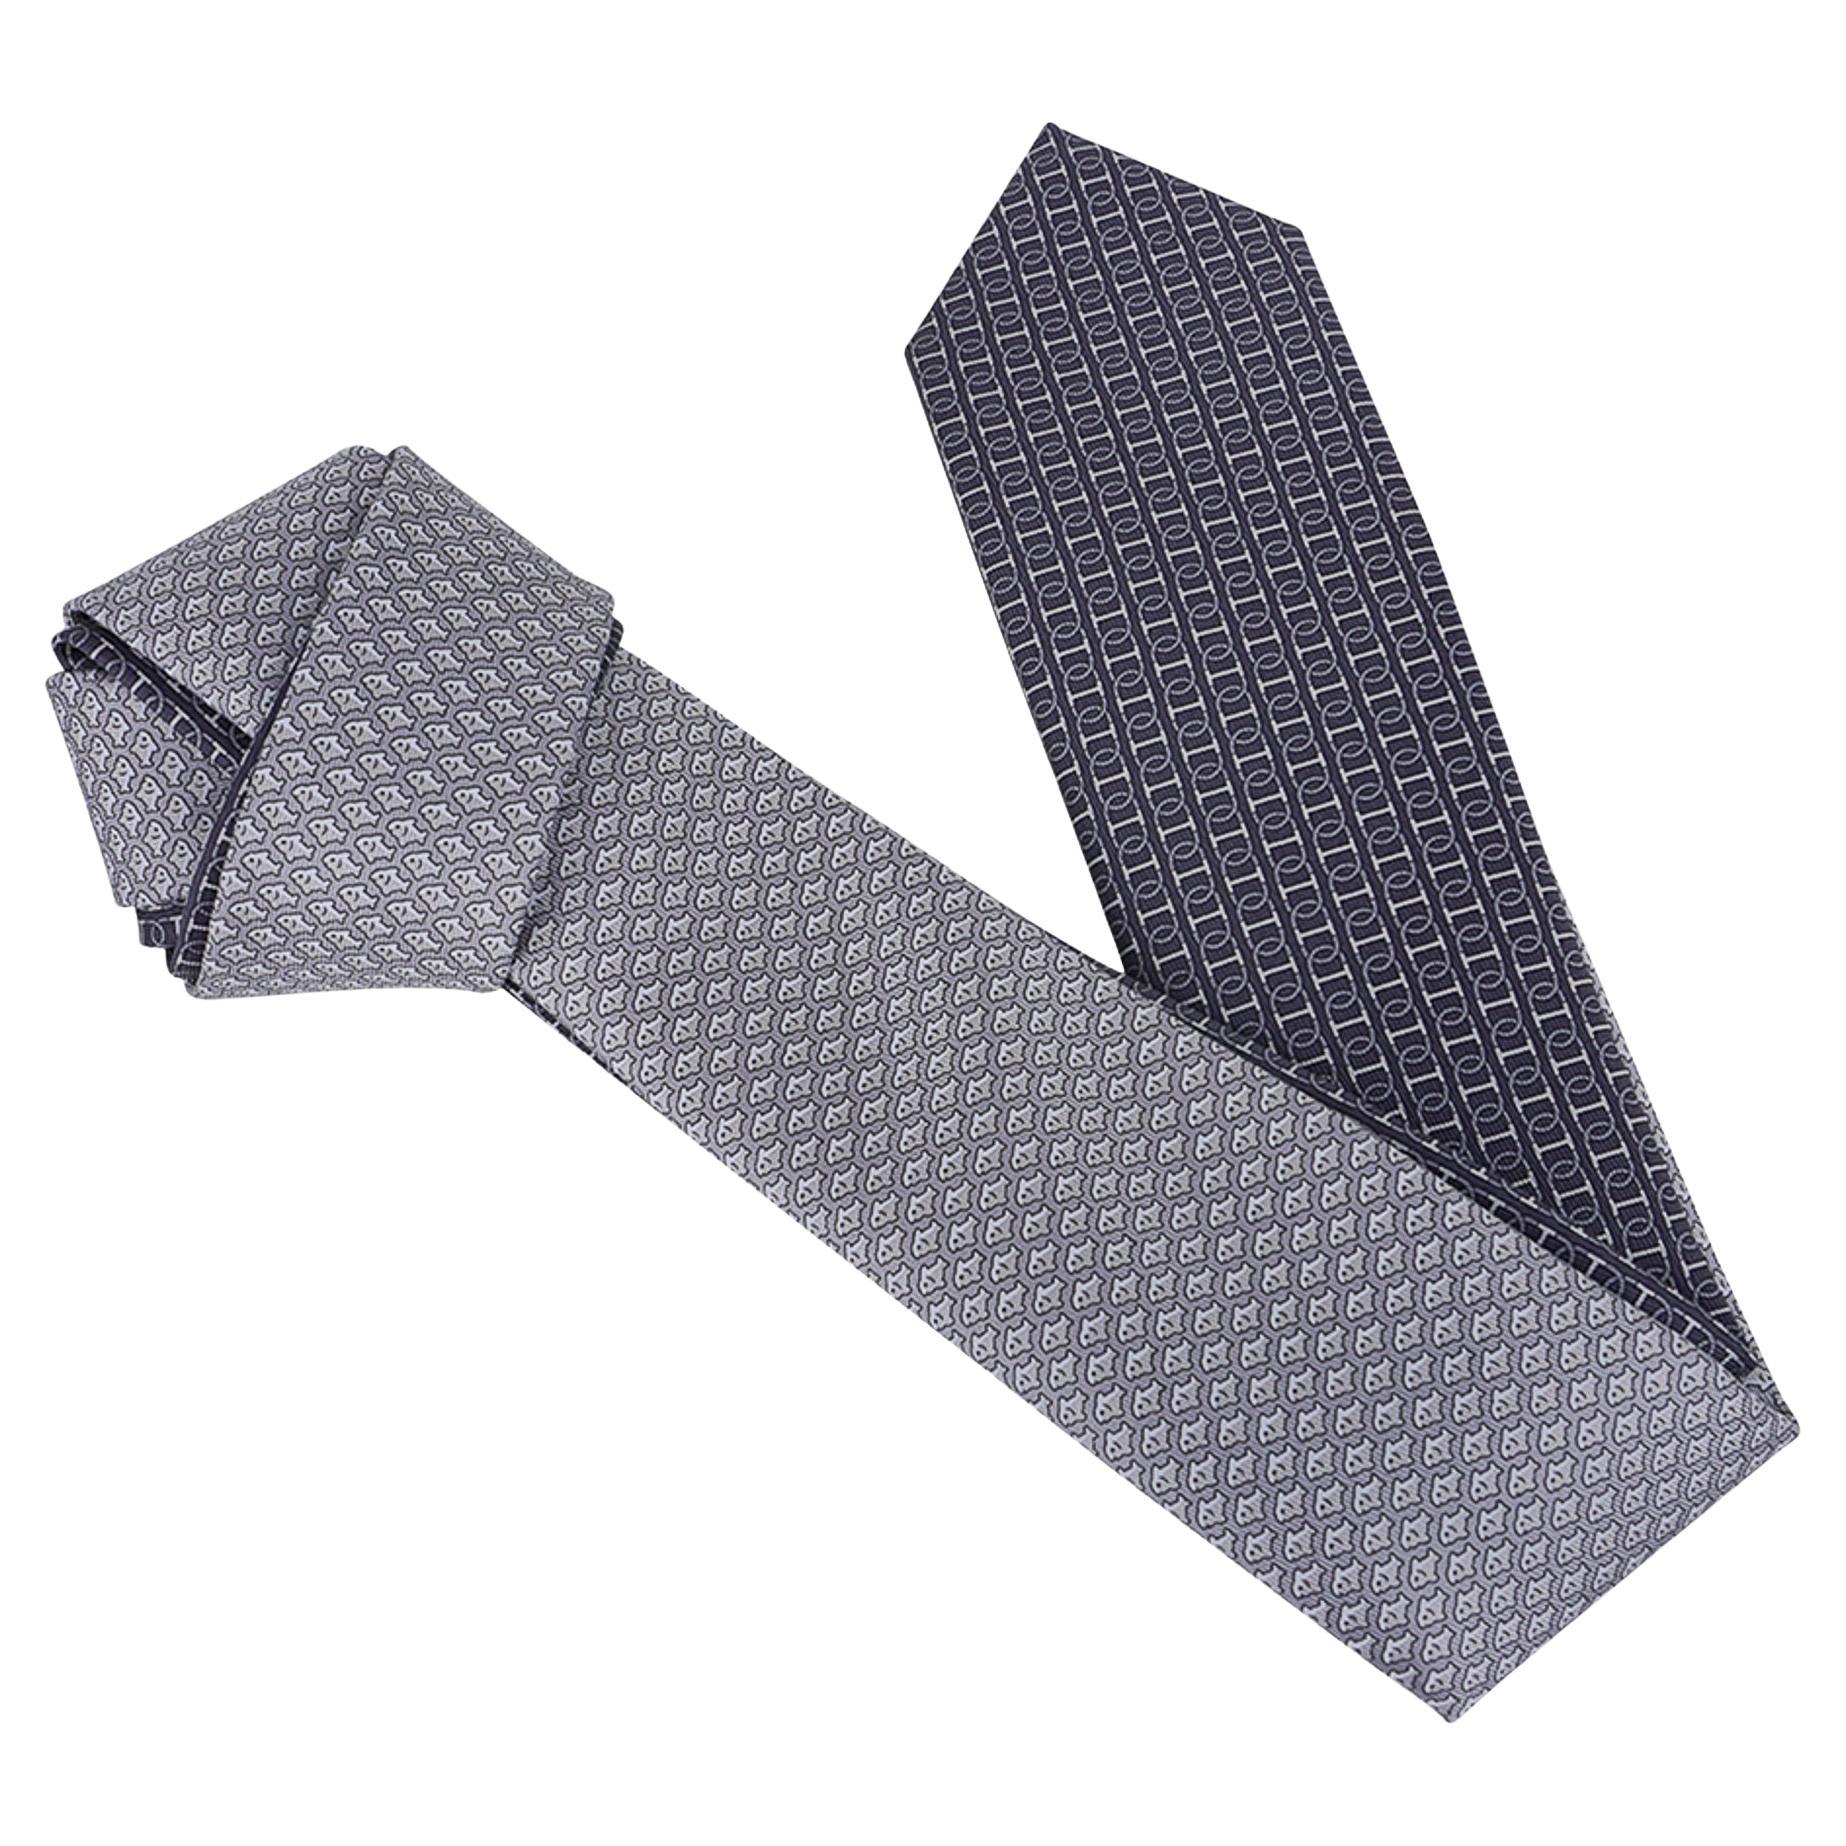 Cravate Twillbi double 6 imprimé Antracite/Gris Hermès, neuve avec boîte